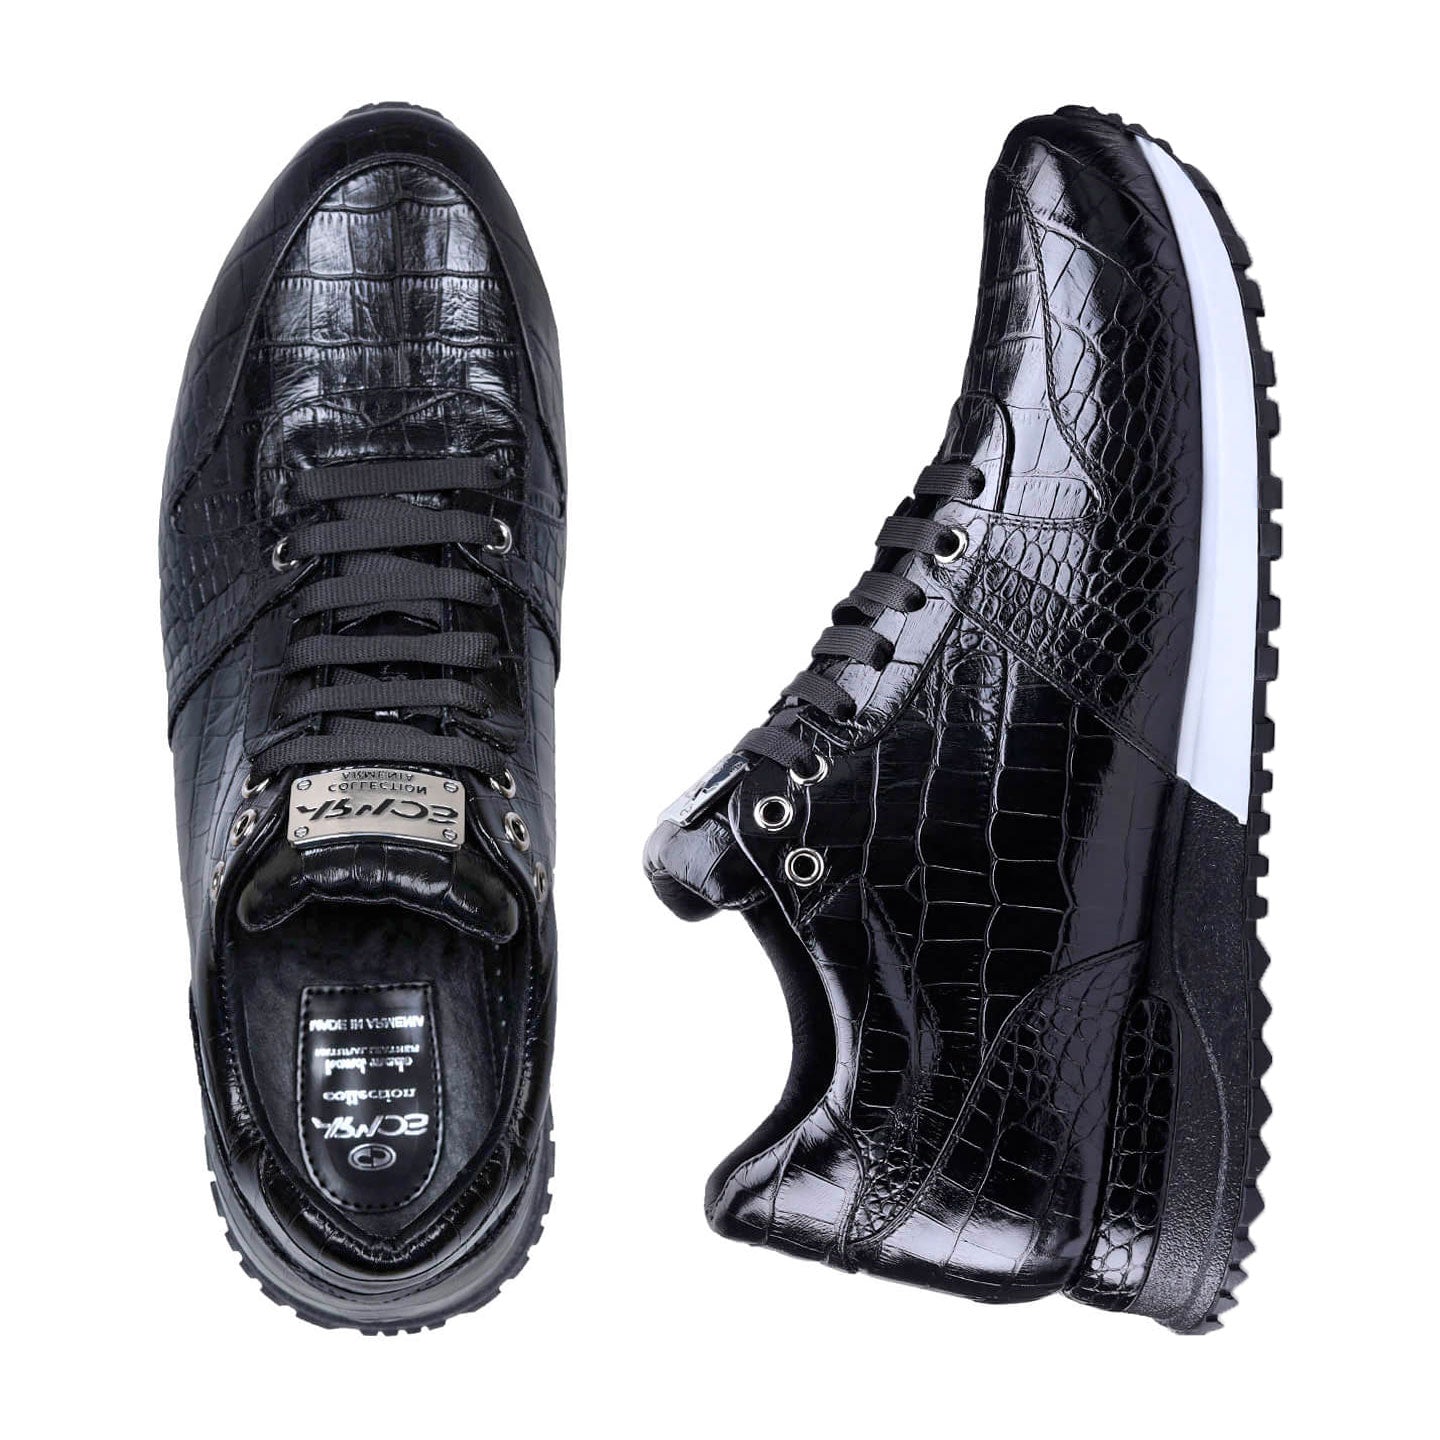 Croc-effect sneakers